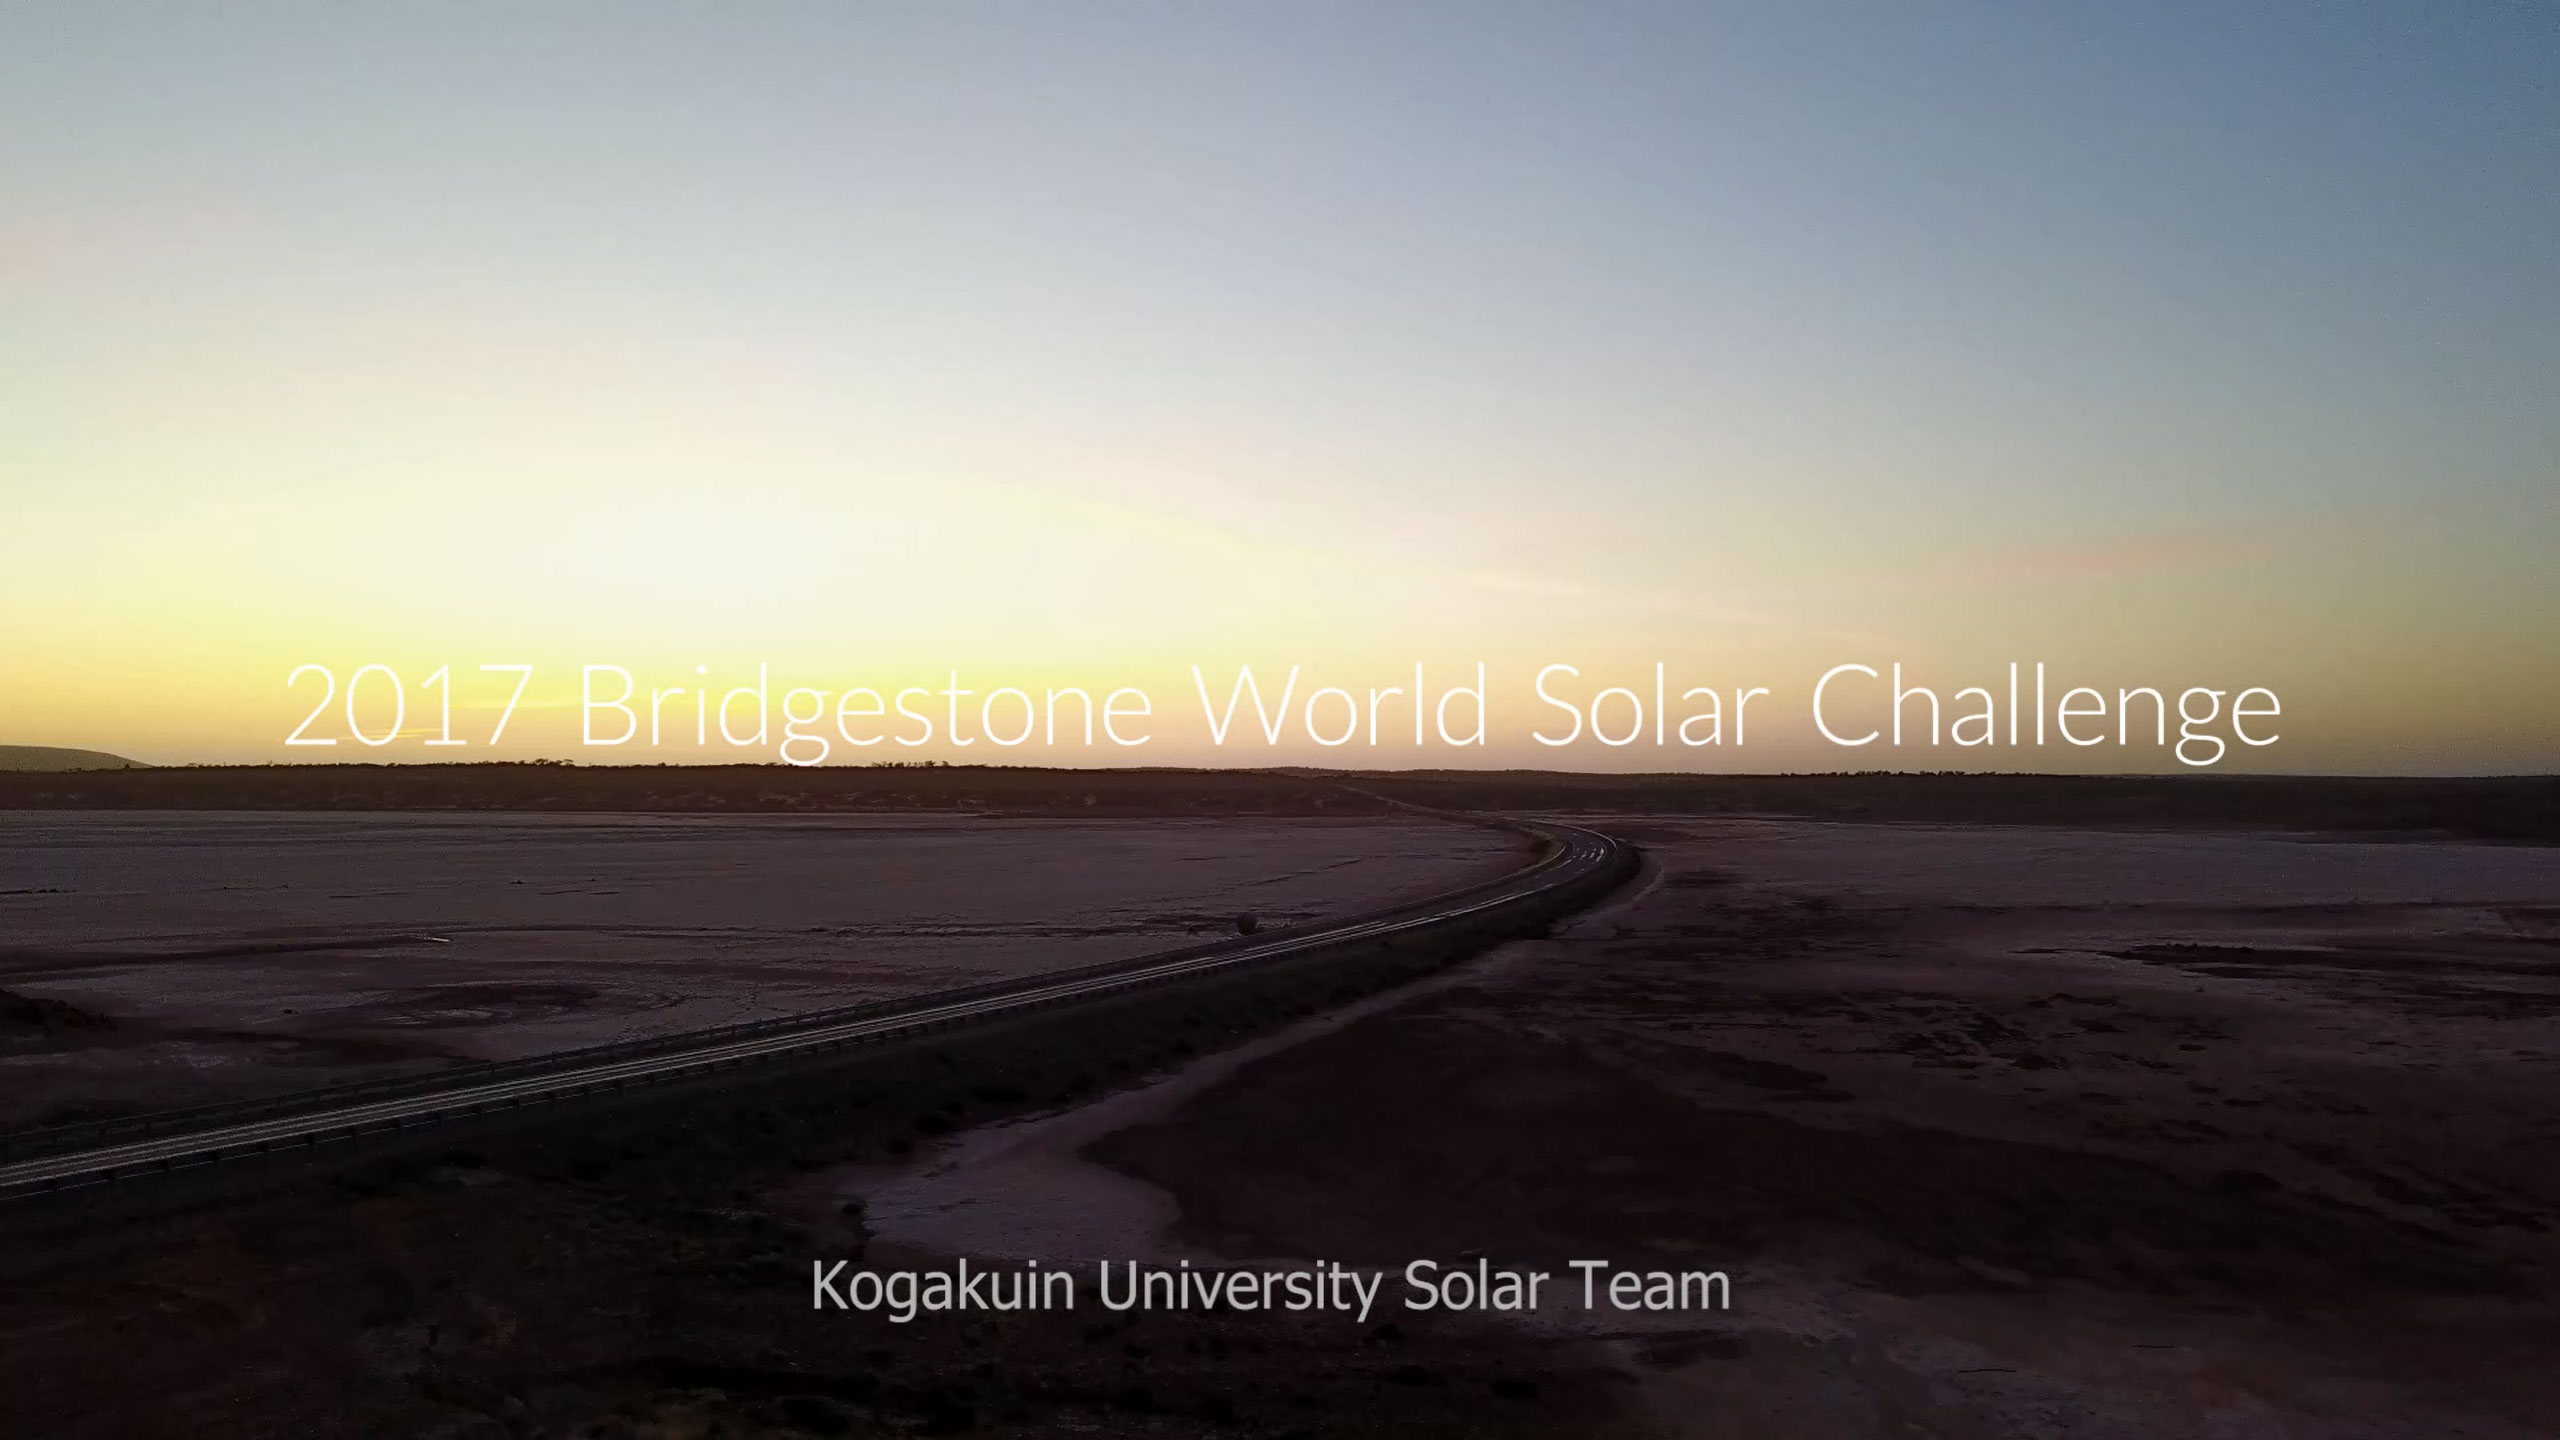 工学院大学ソーラーチームが制作した世界大会参戦動画（総集編）を公開